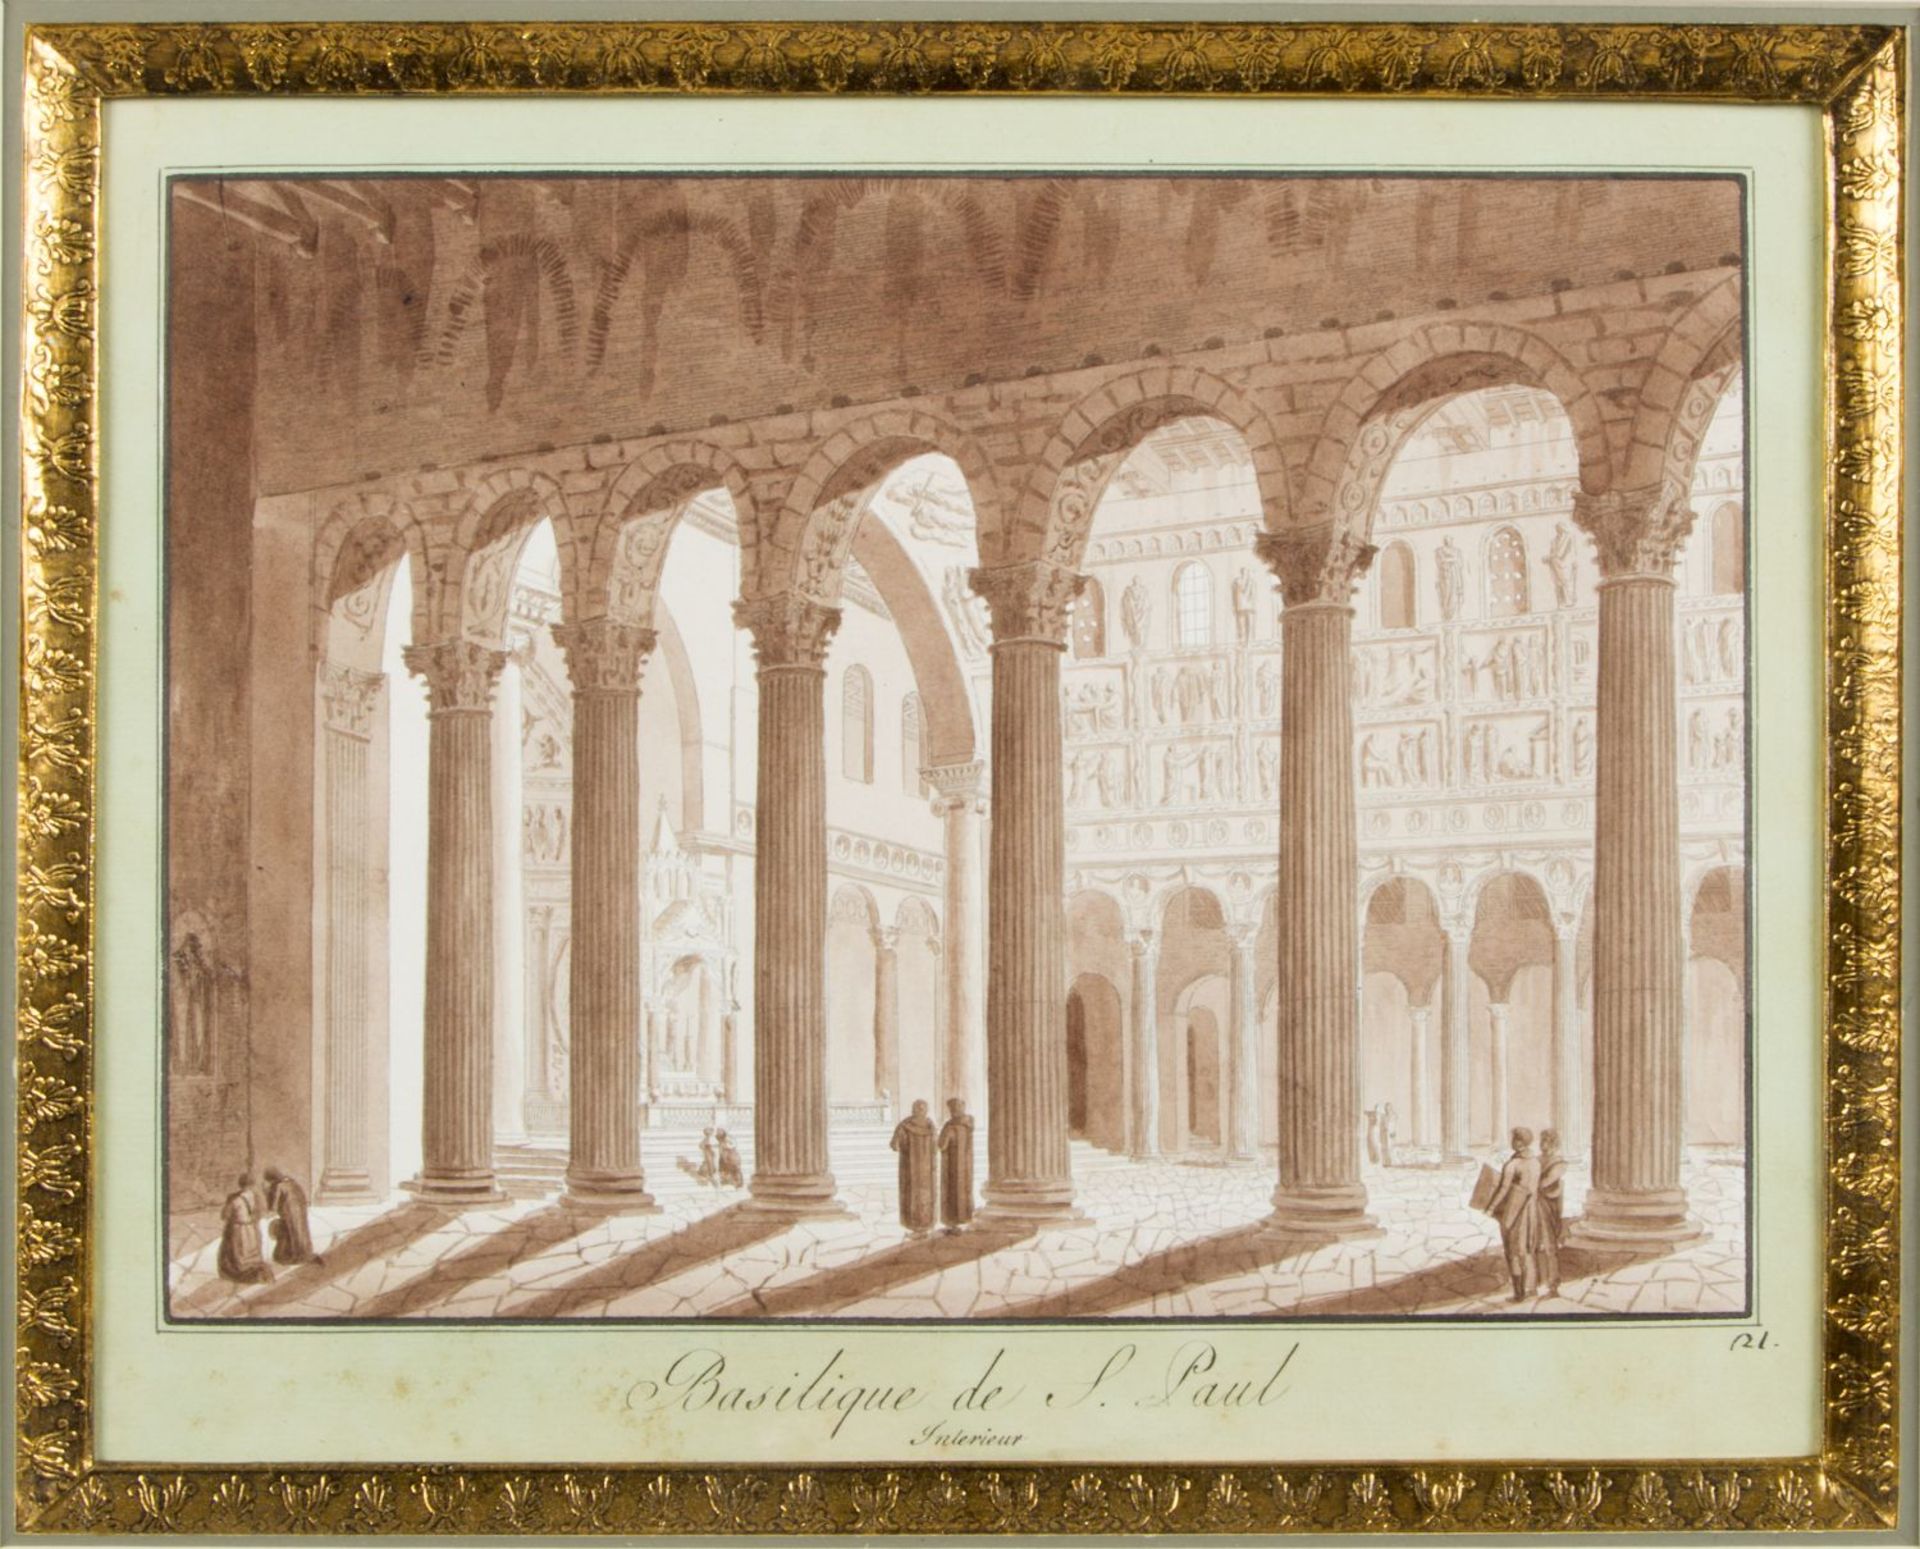 Uggeri, Angelo. 1754 - 1837. Zugeschrieben Basilique de S. Paul Interieur. Braun lavierte Tuschfeder